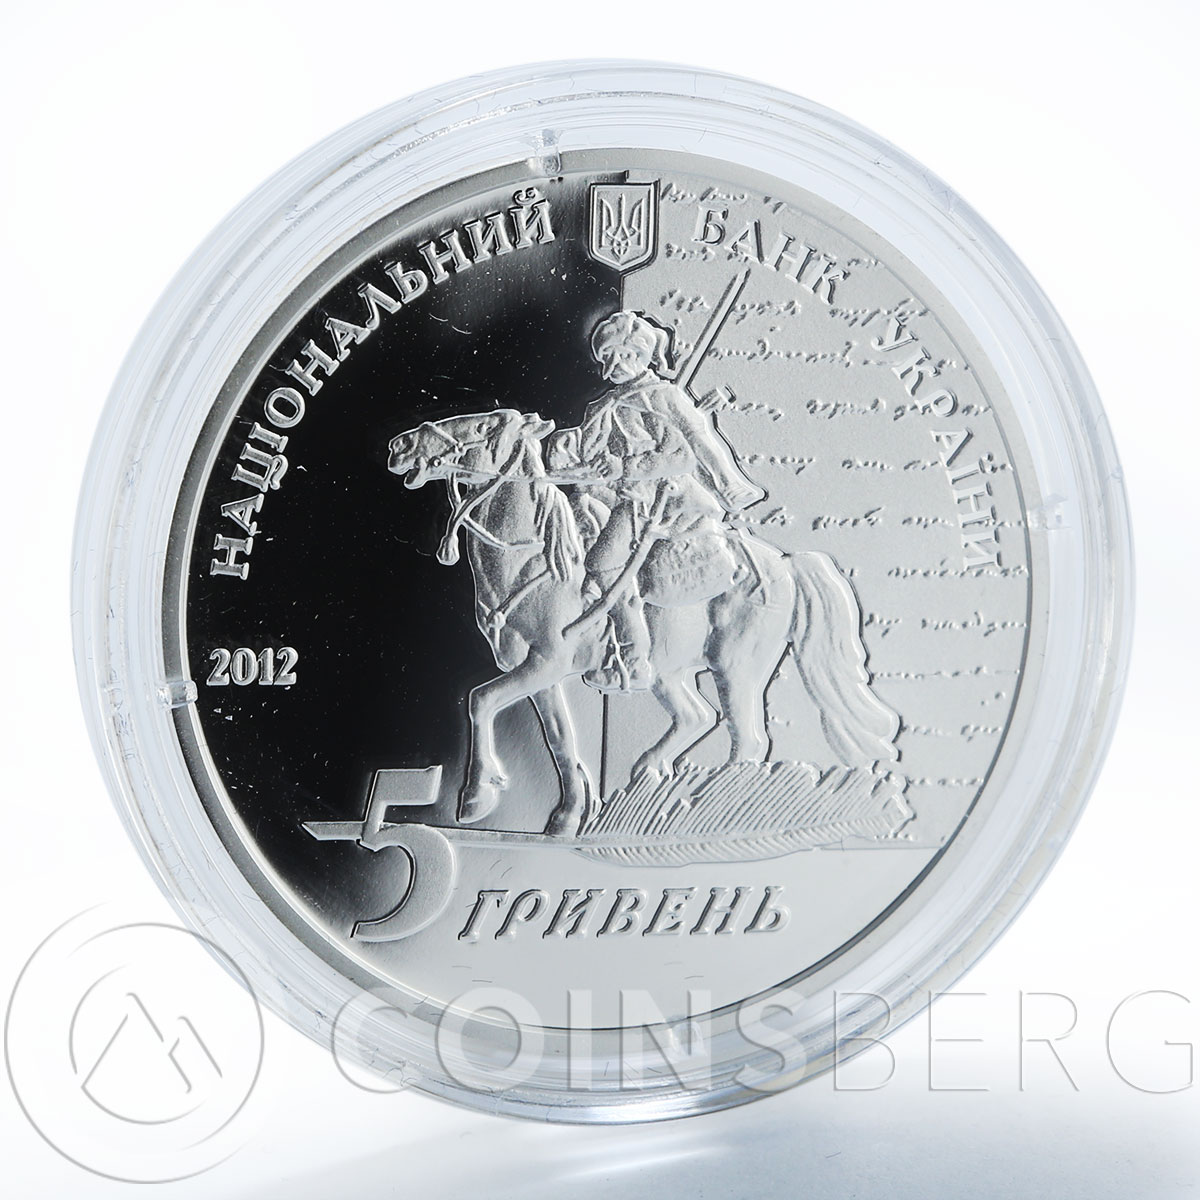 Ukraine 5 hryvnia Grebіnka Yevgeny Writer Poet silver proof coin 2012